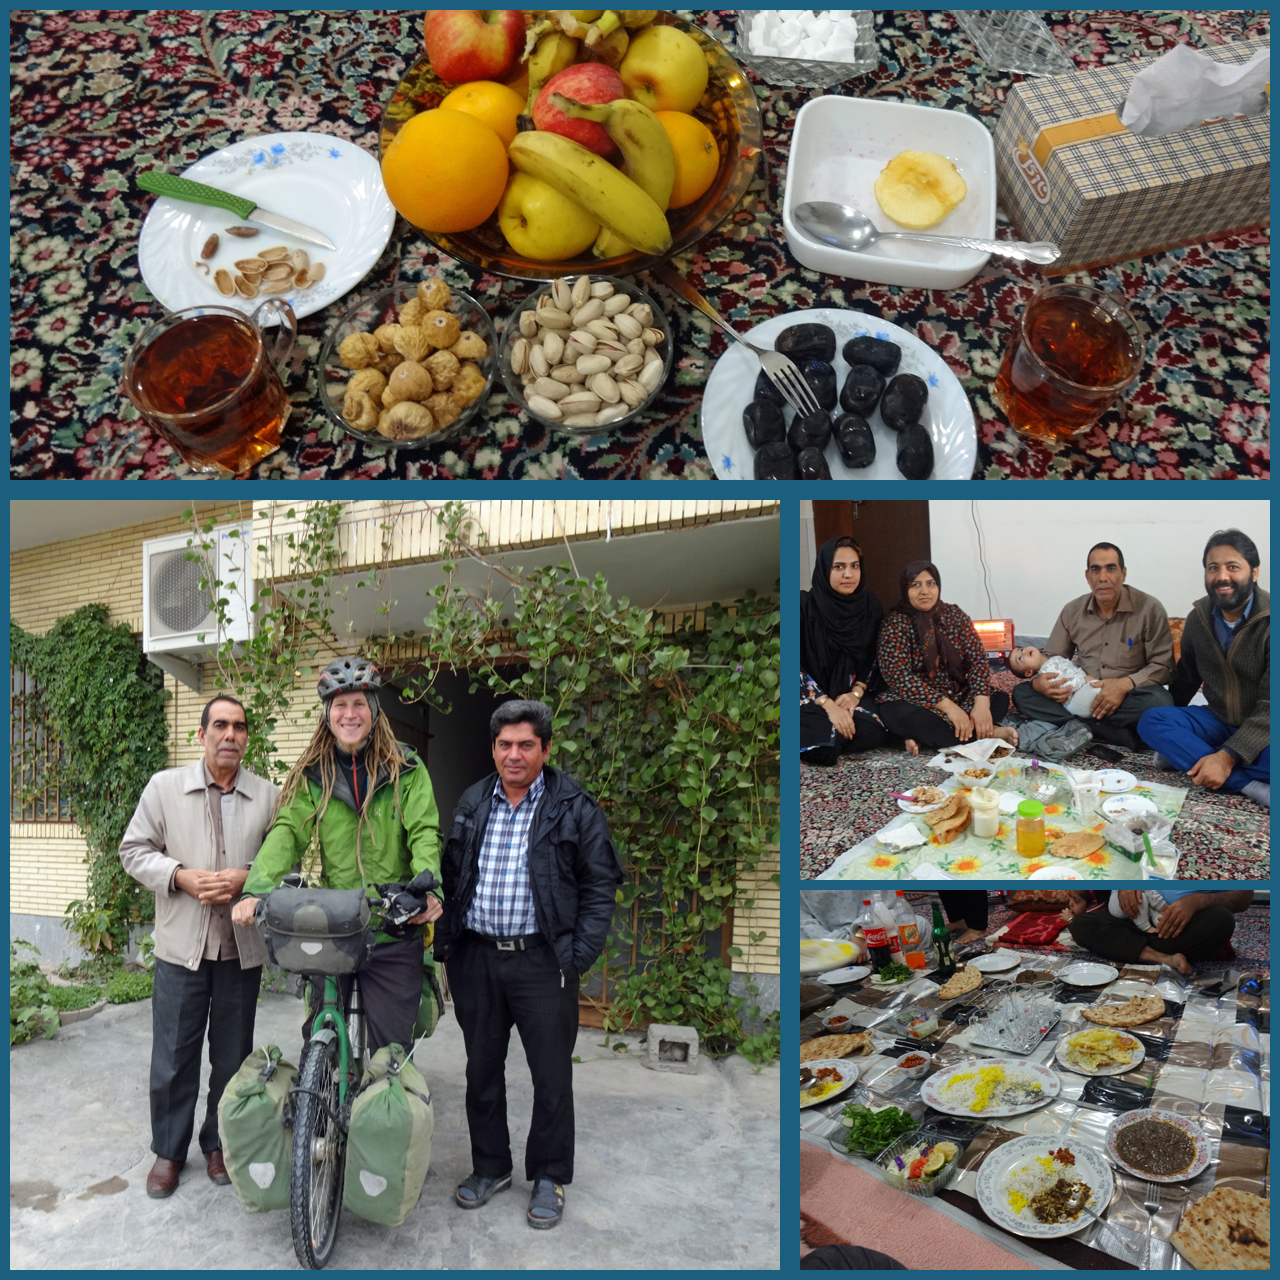 Ein weiteres Mal wurde ich im Iran von einer Familie eingeladen.